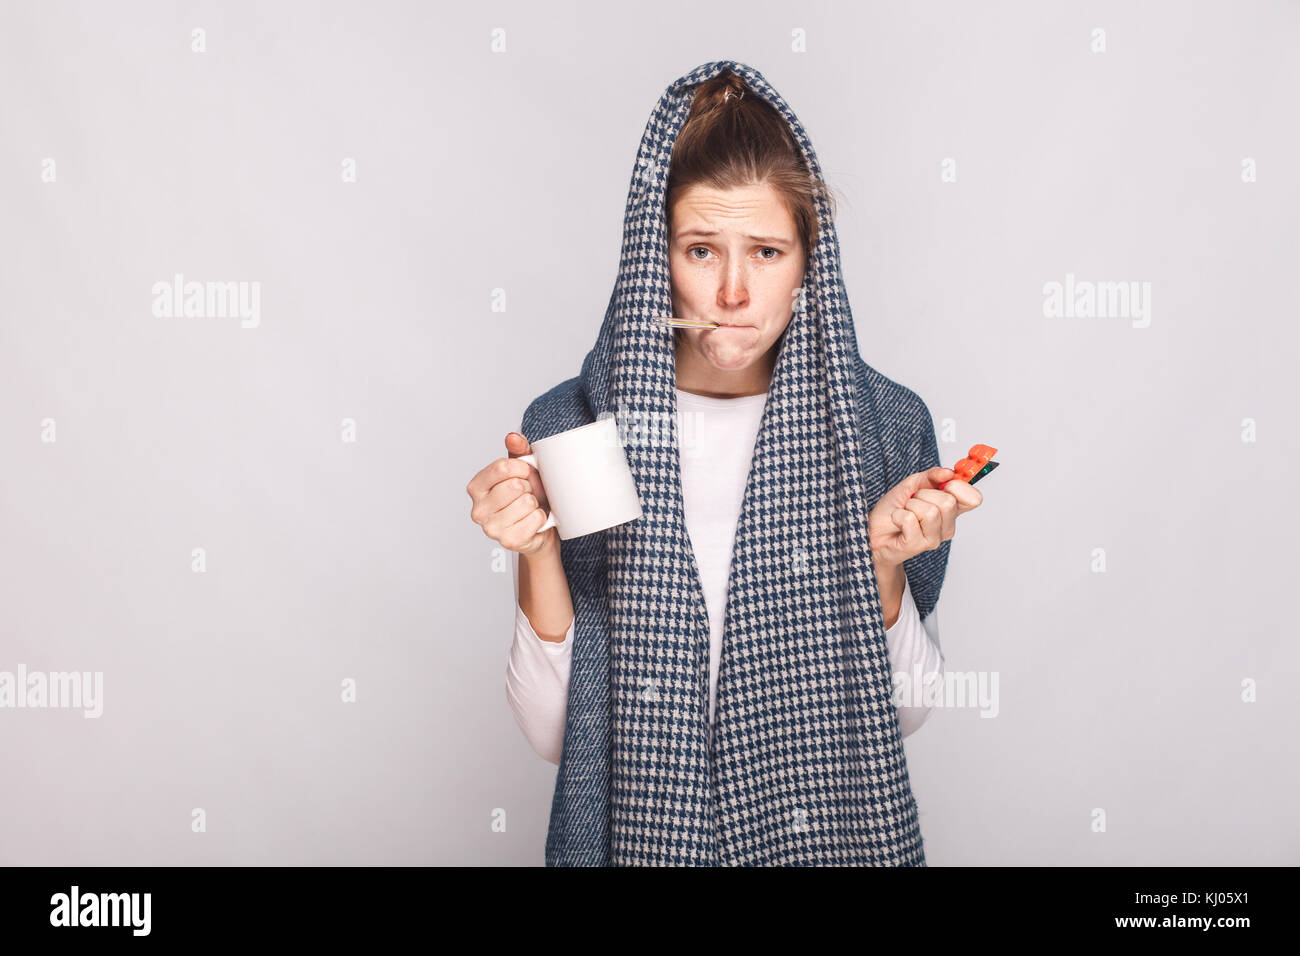 Junge Frau mit grauen Schal, Schale, Thermometer und Pillen. indoor erschossen. Stockfoto